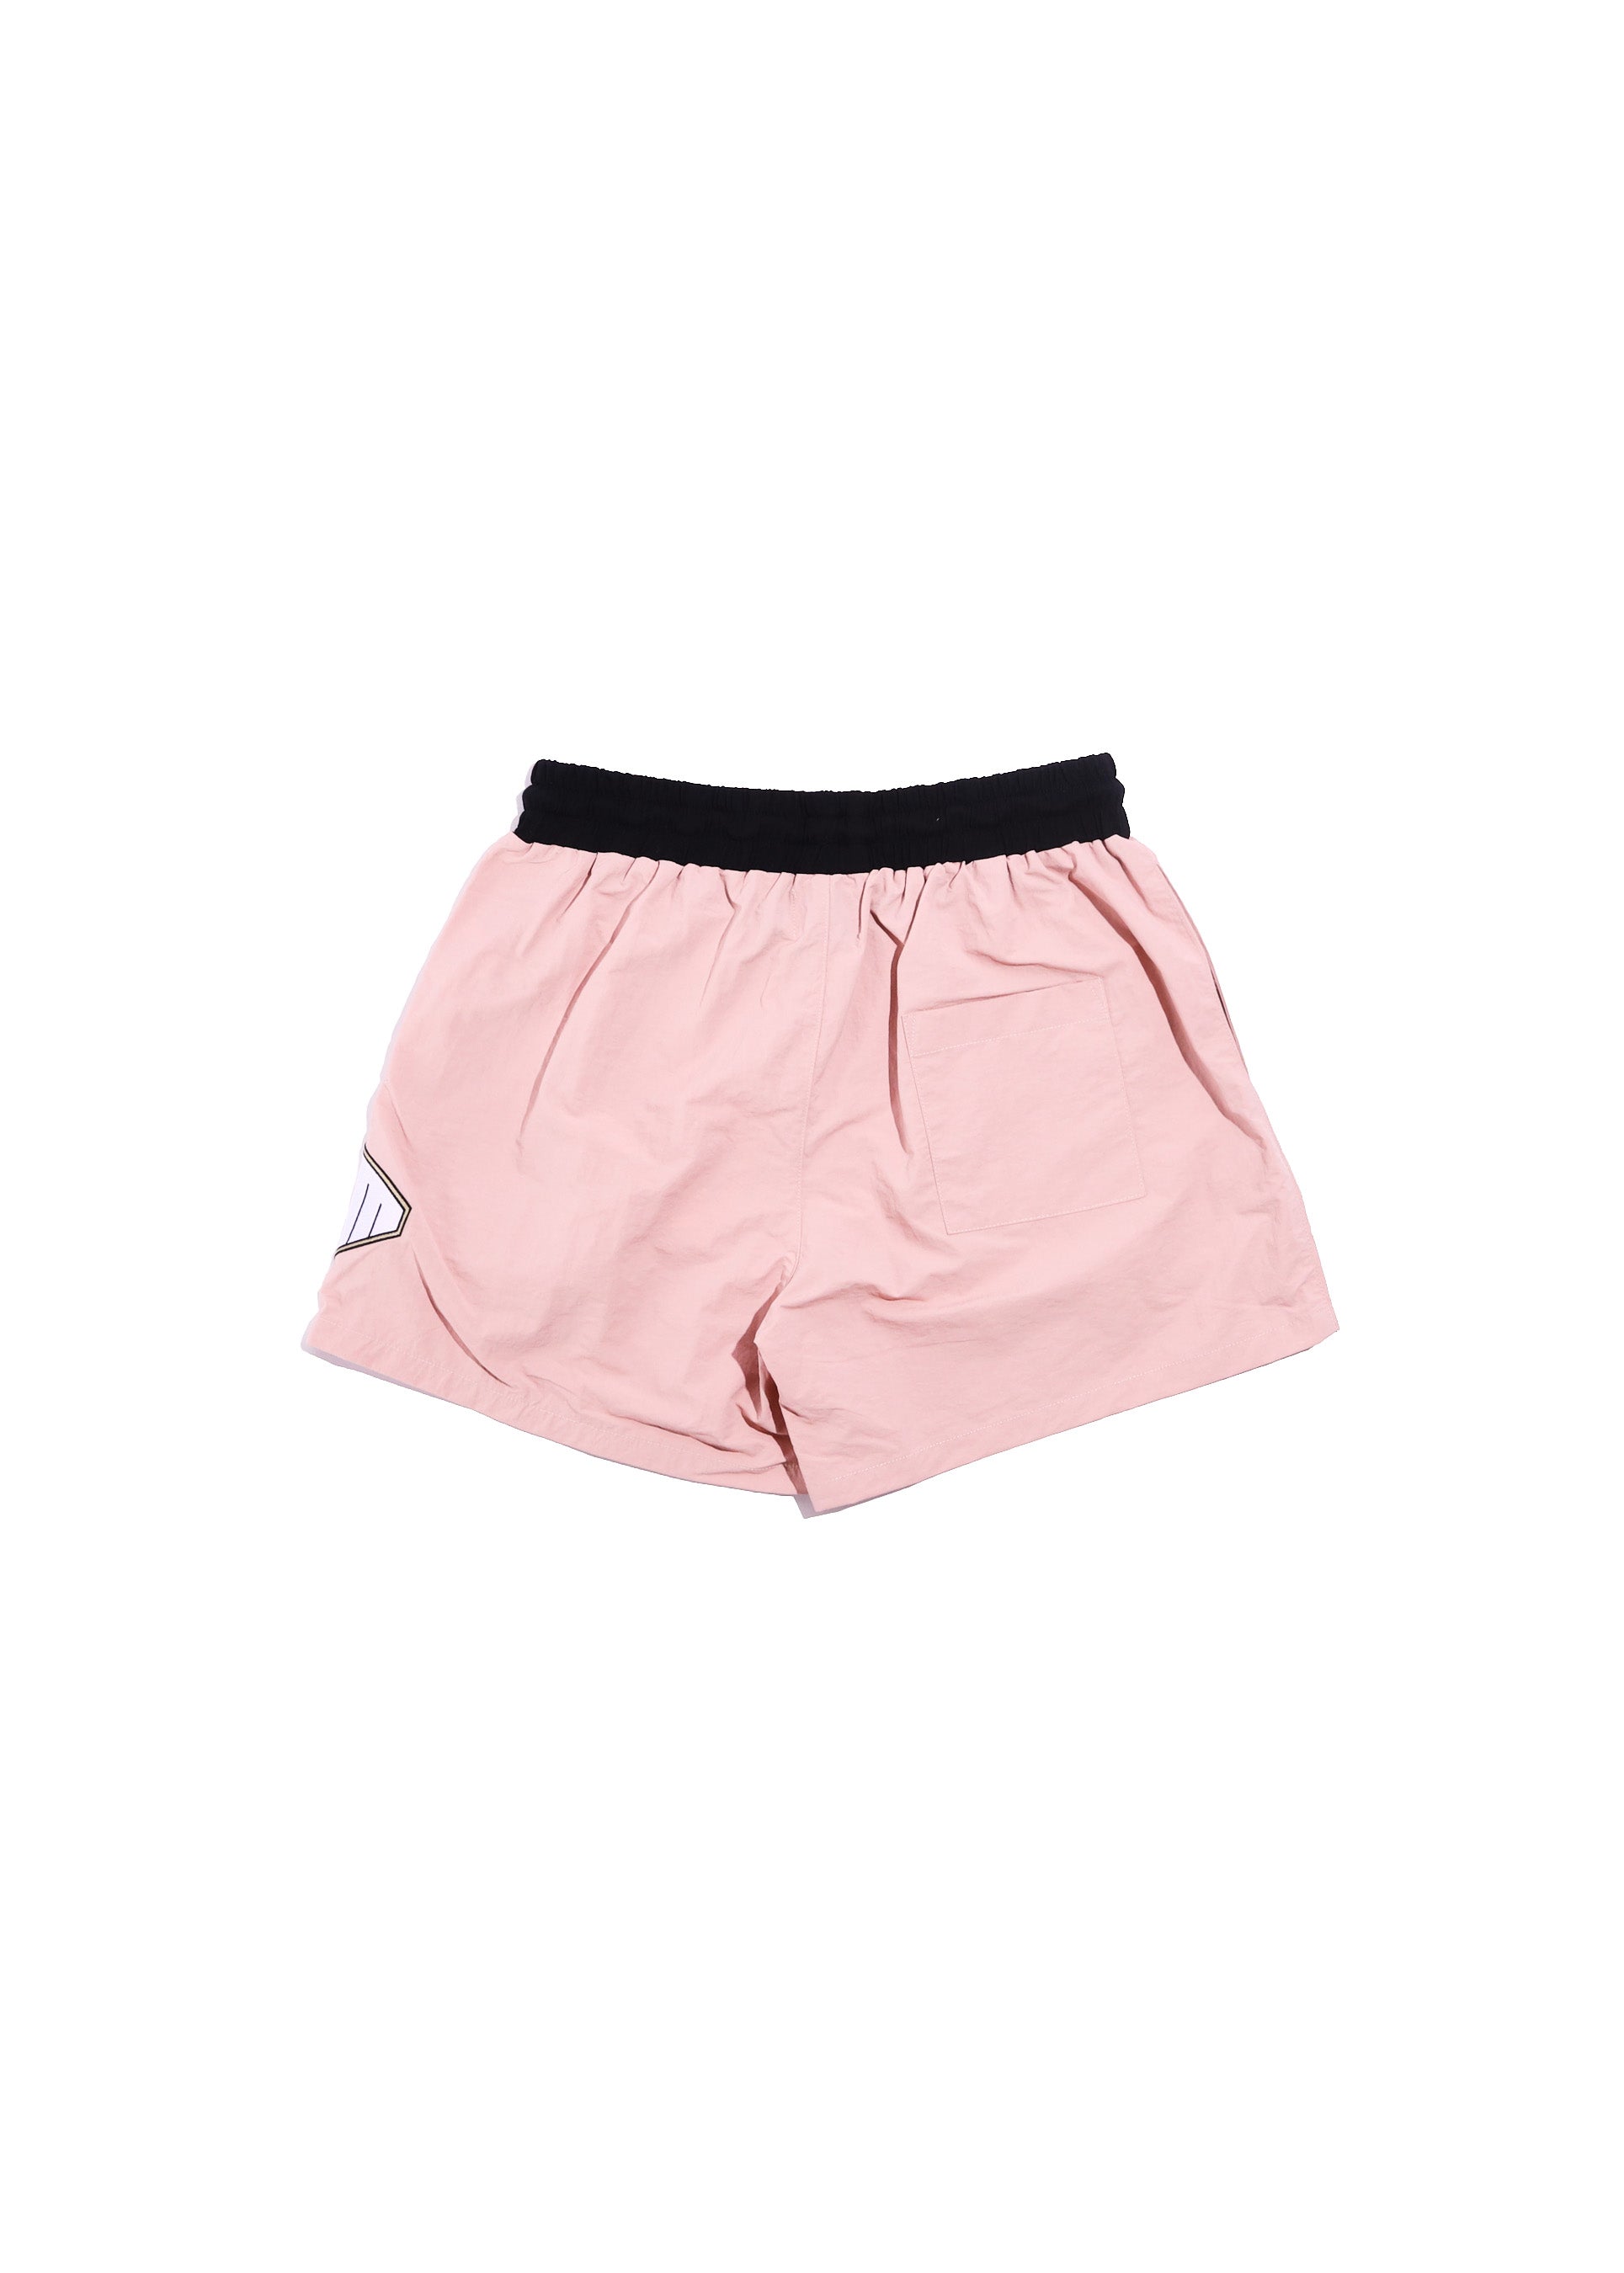 DSM Nylon Shorts - Pink